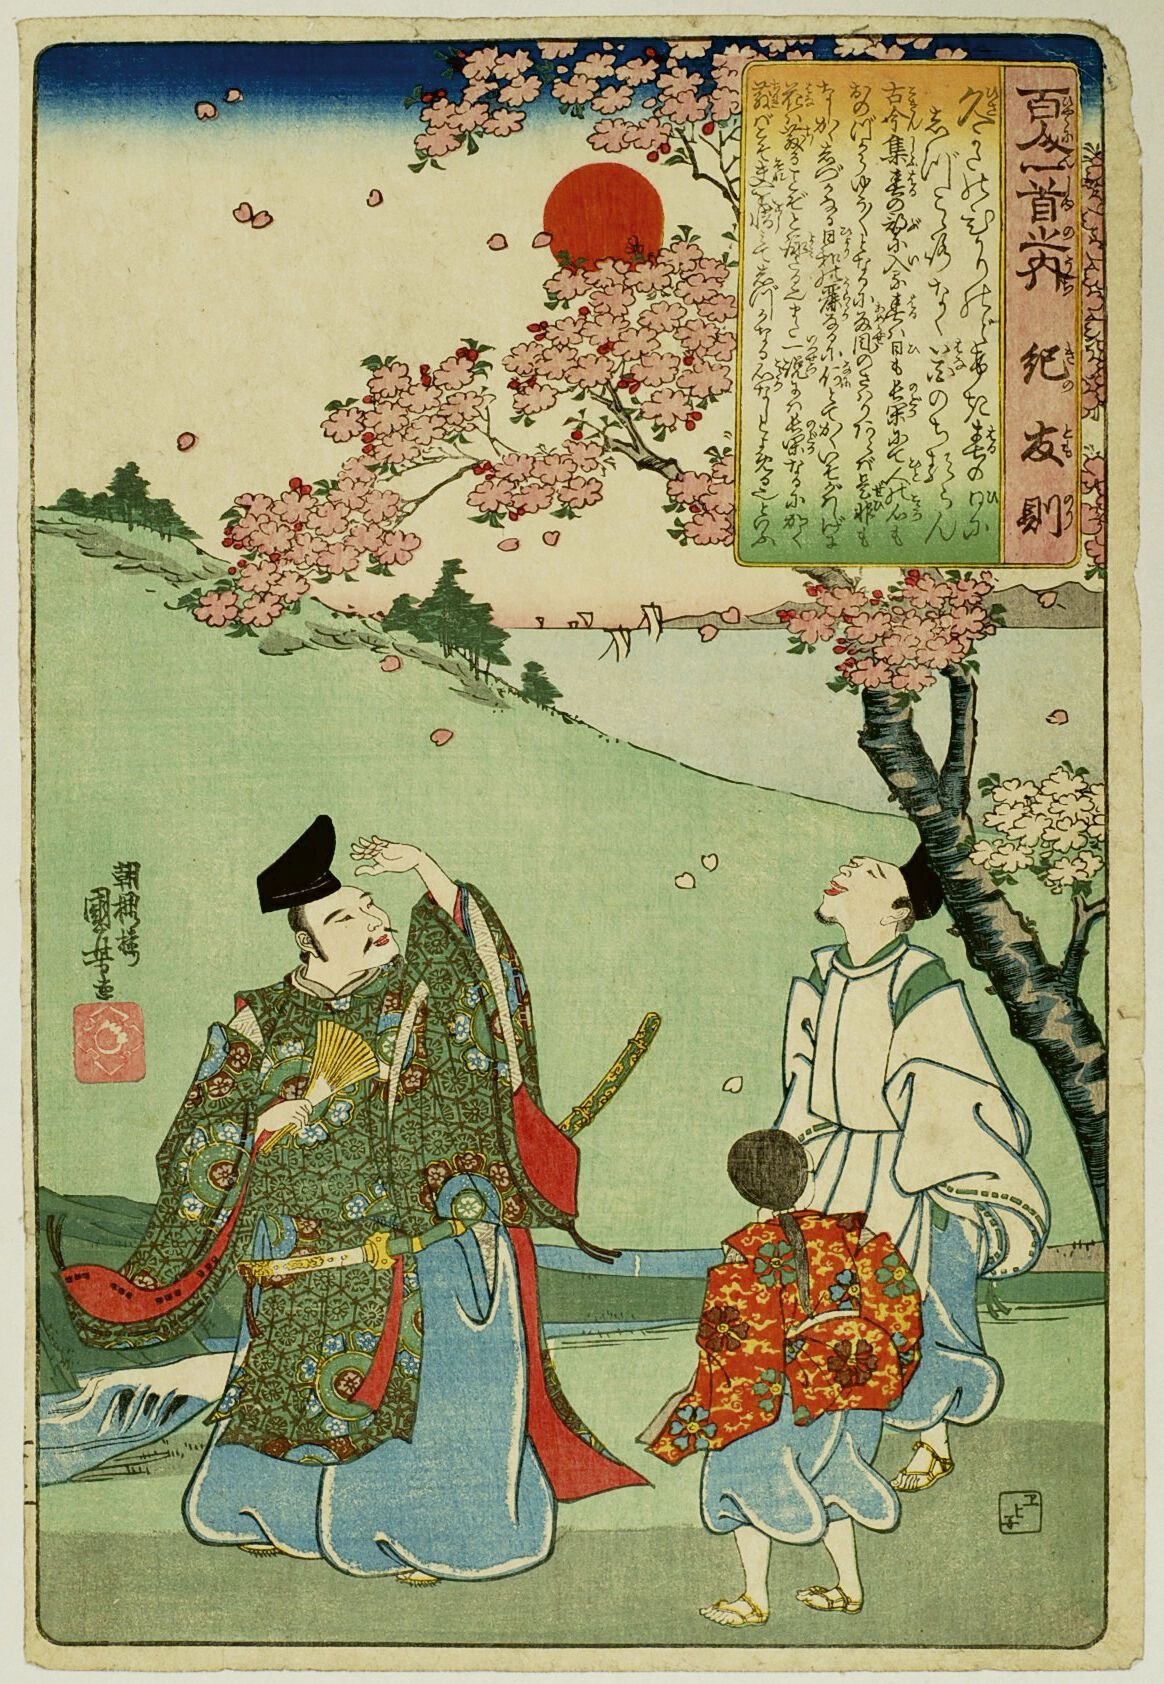 Null 宇多川国芳 (1797-1861)
百人一首》系列中的 "Oban tate-e"，板块为Ki no Tomonori，诗人由一页纸和一个服务员陪同观&hellip;